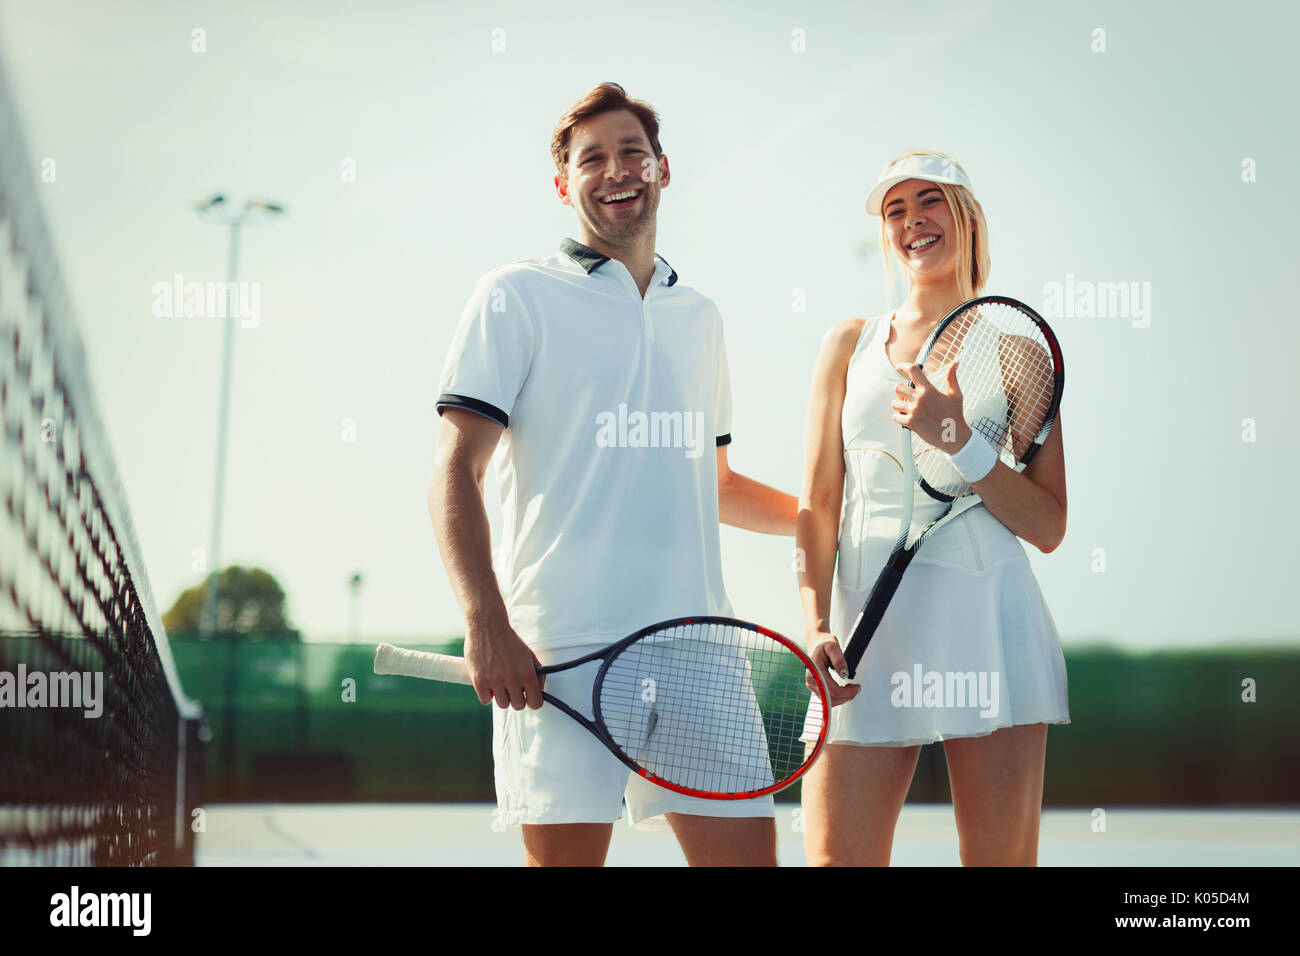 Portrait souriant, confiant la tenue des joueurs de tennis raquettes de tennis sur le court de tennis ensoleillé Banque D'Images